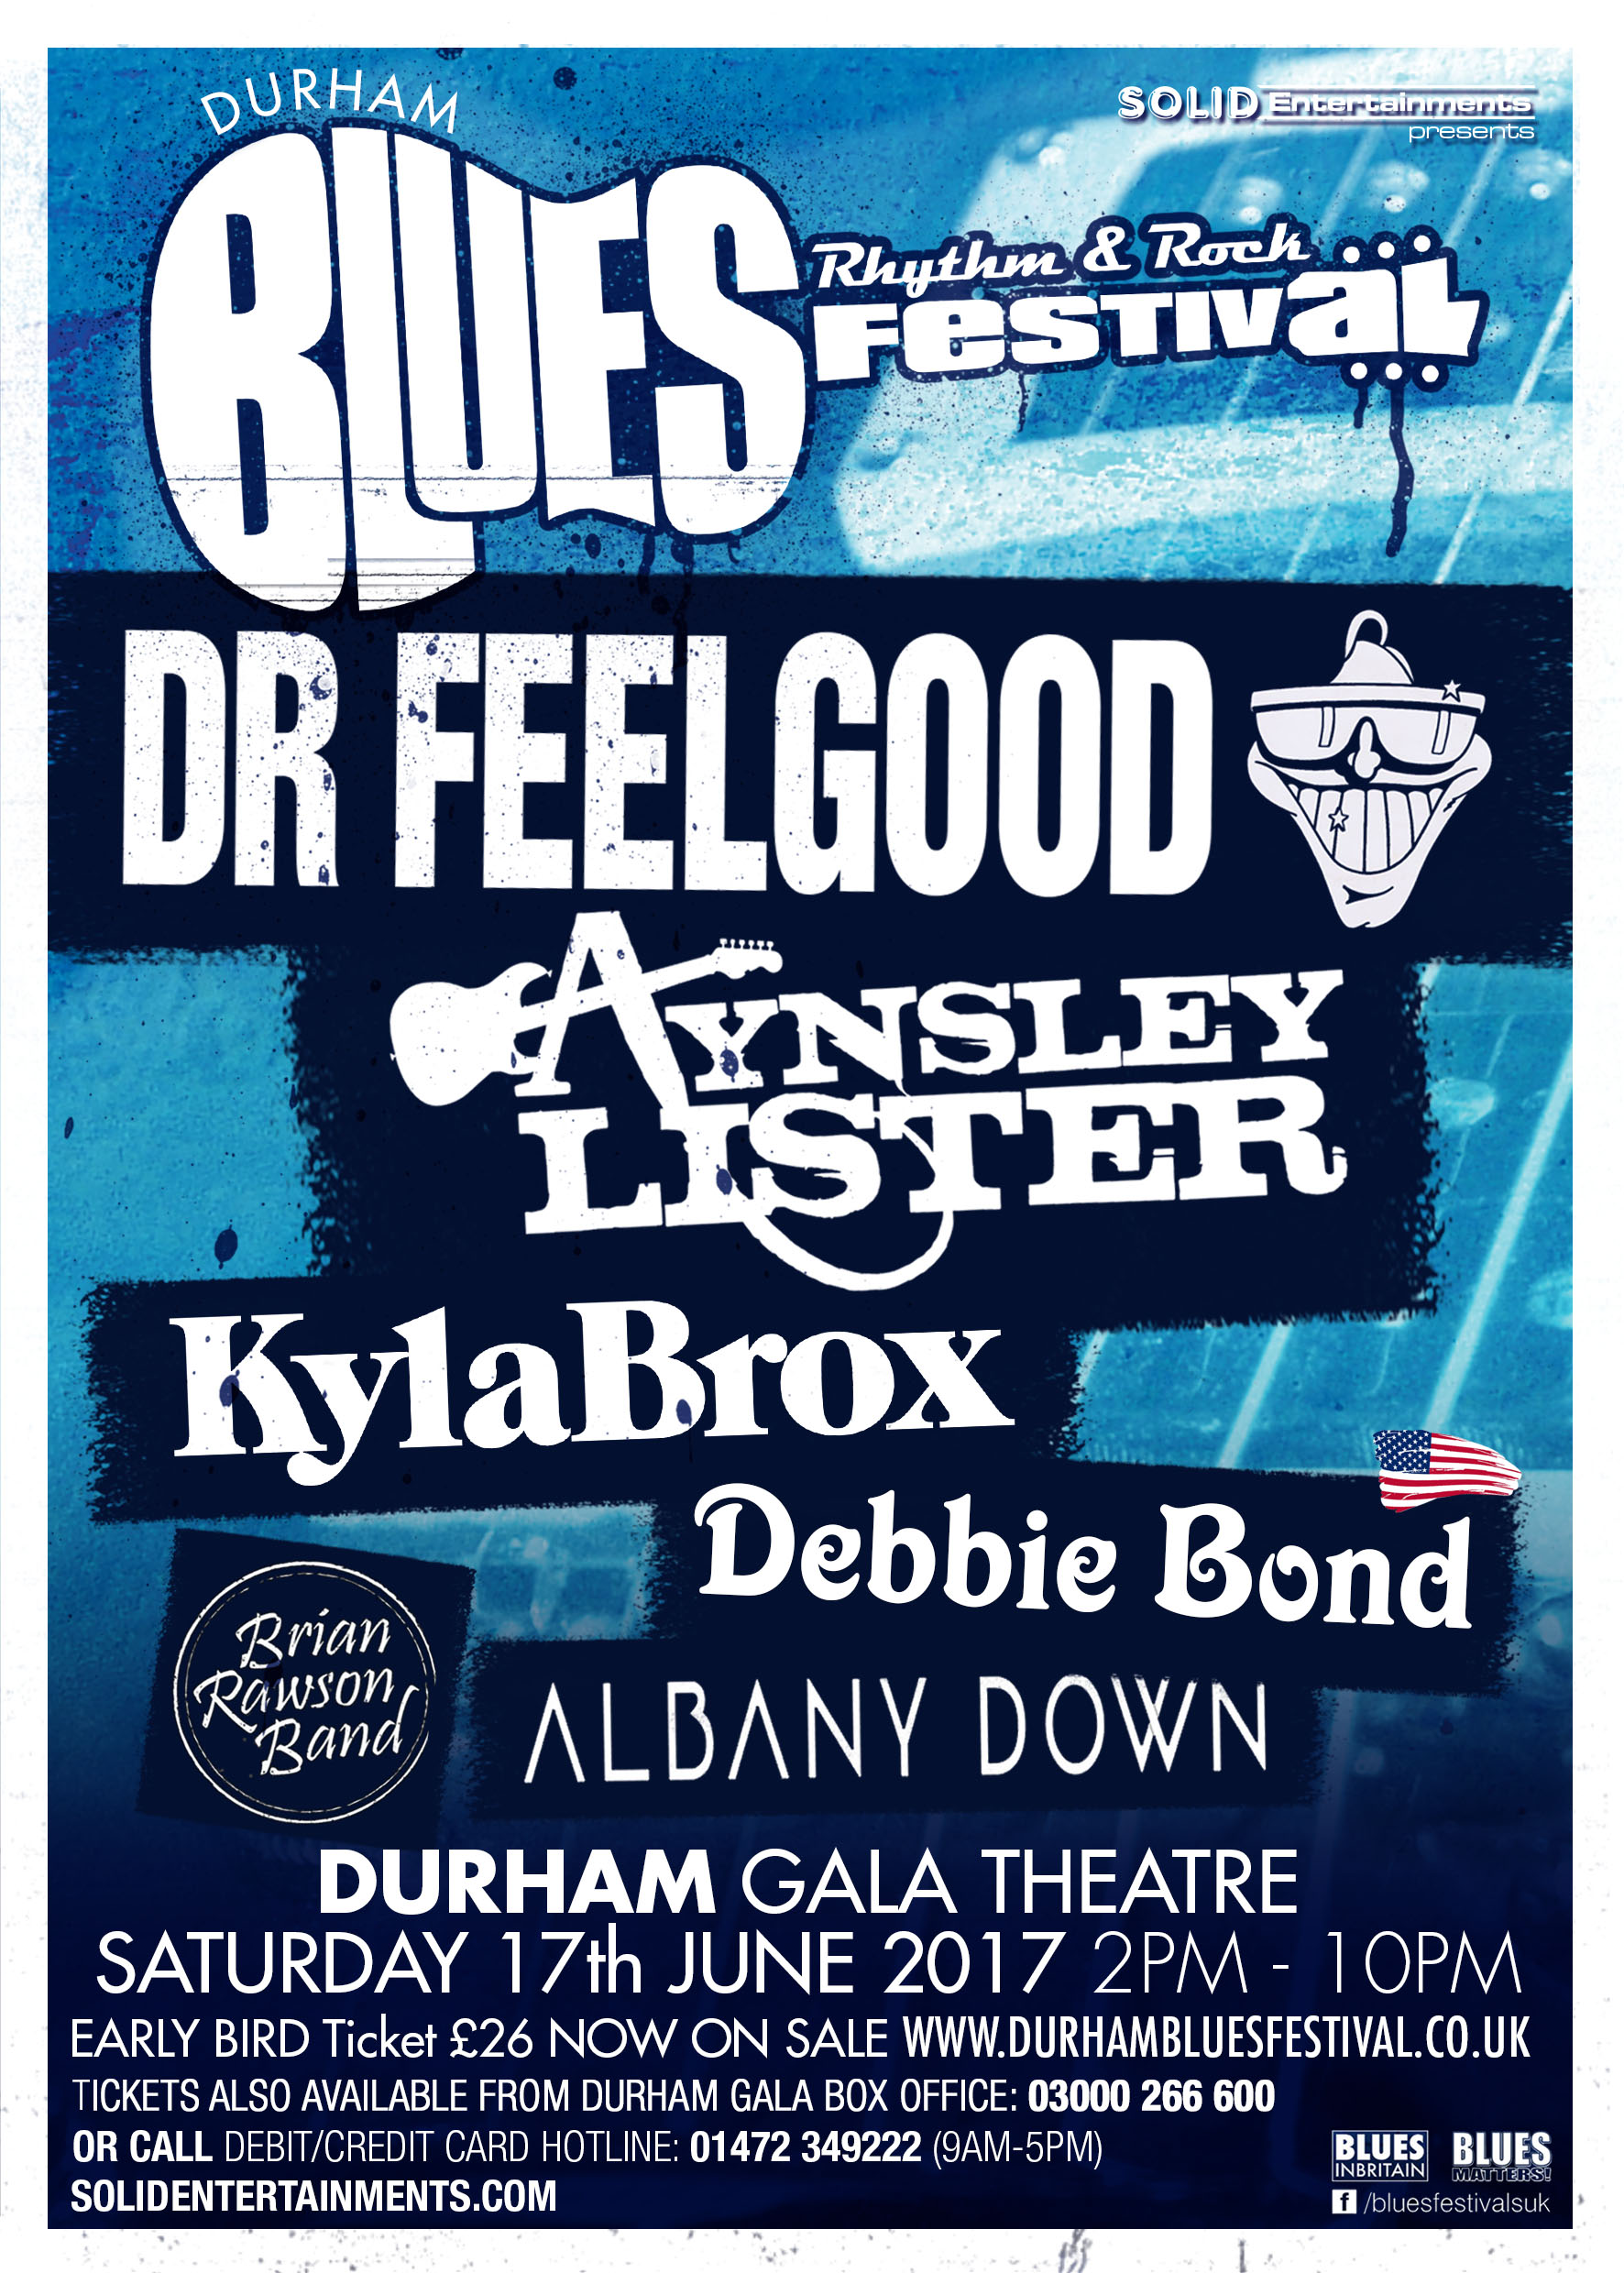 Durham Blues, Rhythm & Rock Festival - June 17th - Durham Magazine ...